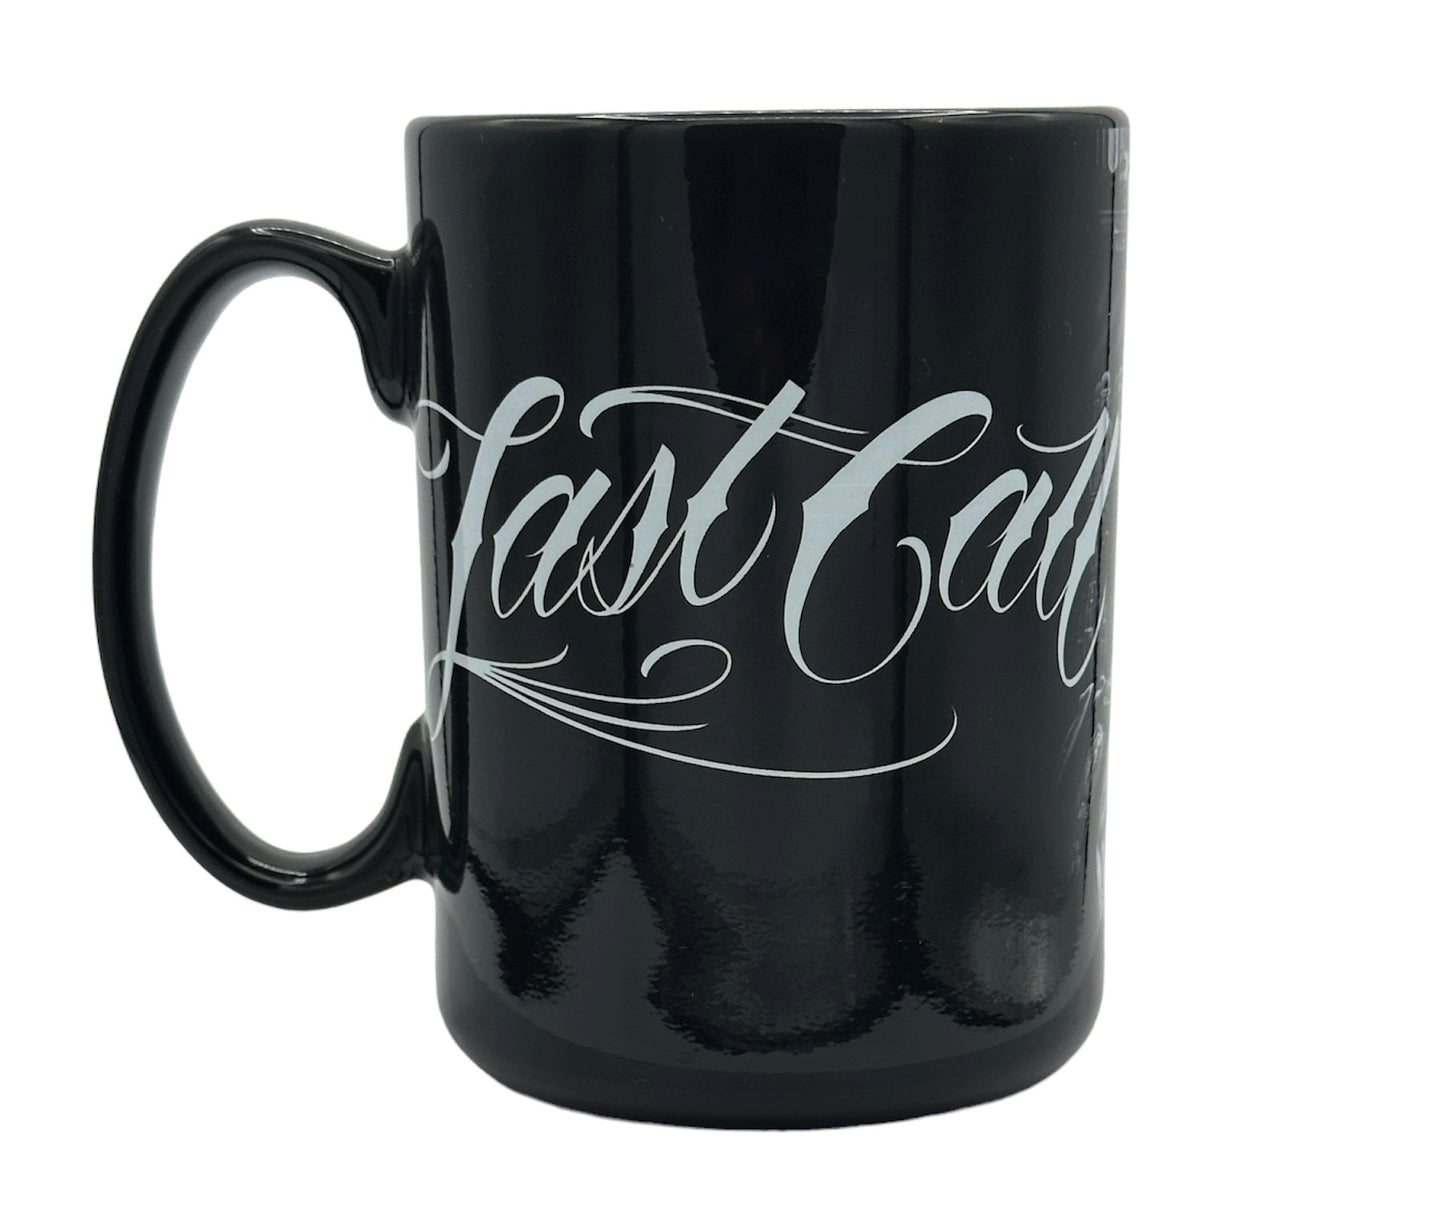 LAST CALL - Coffee Mug